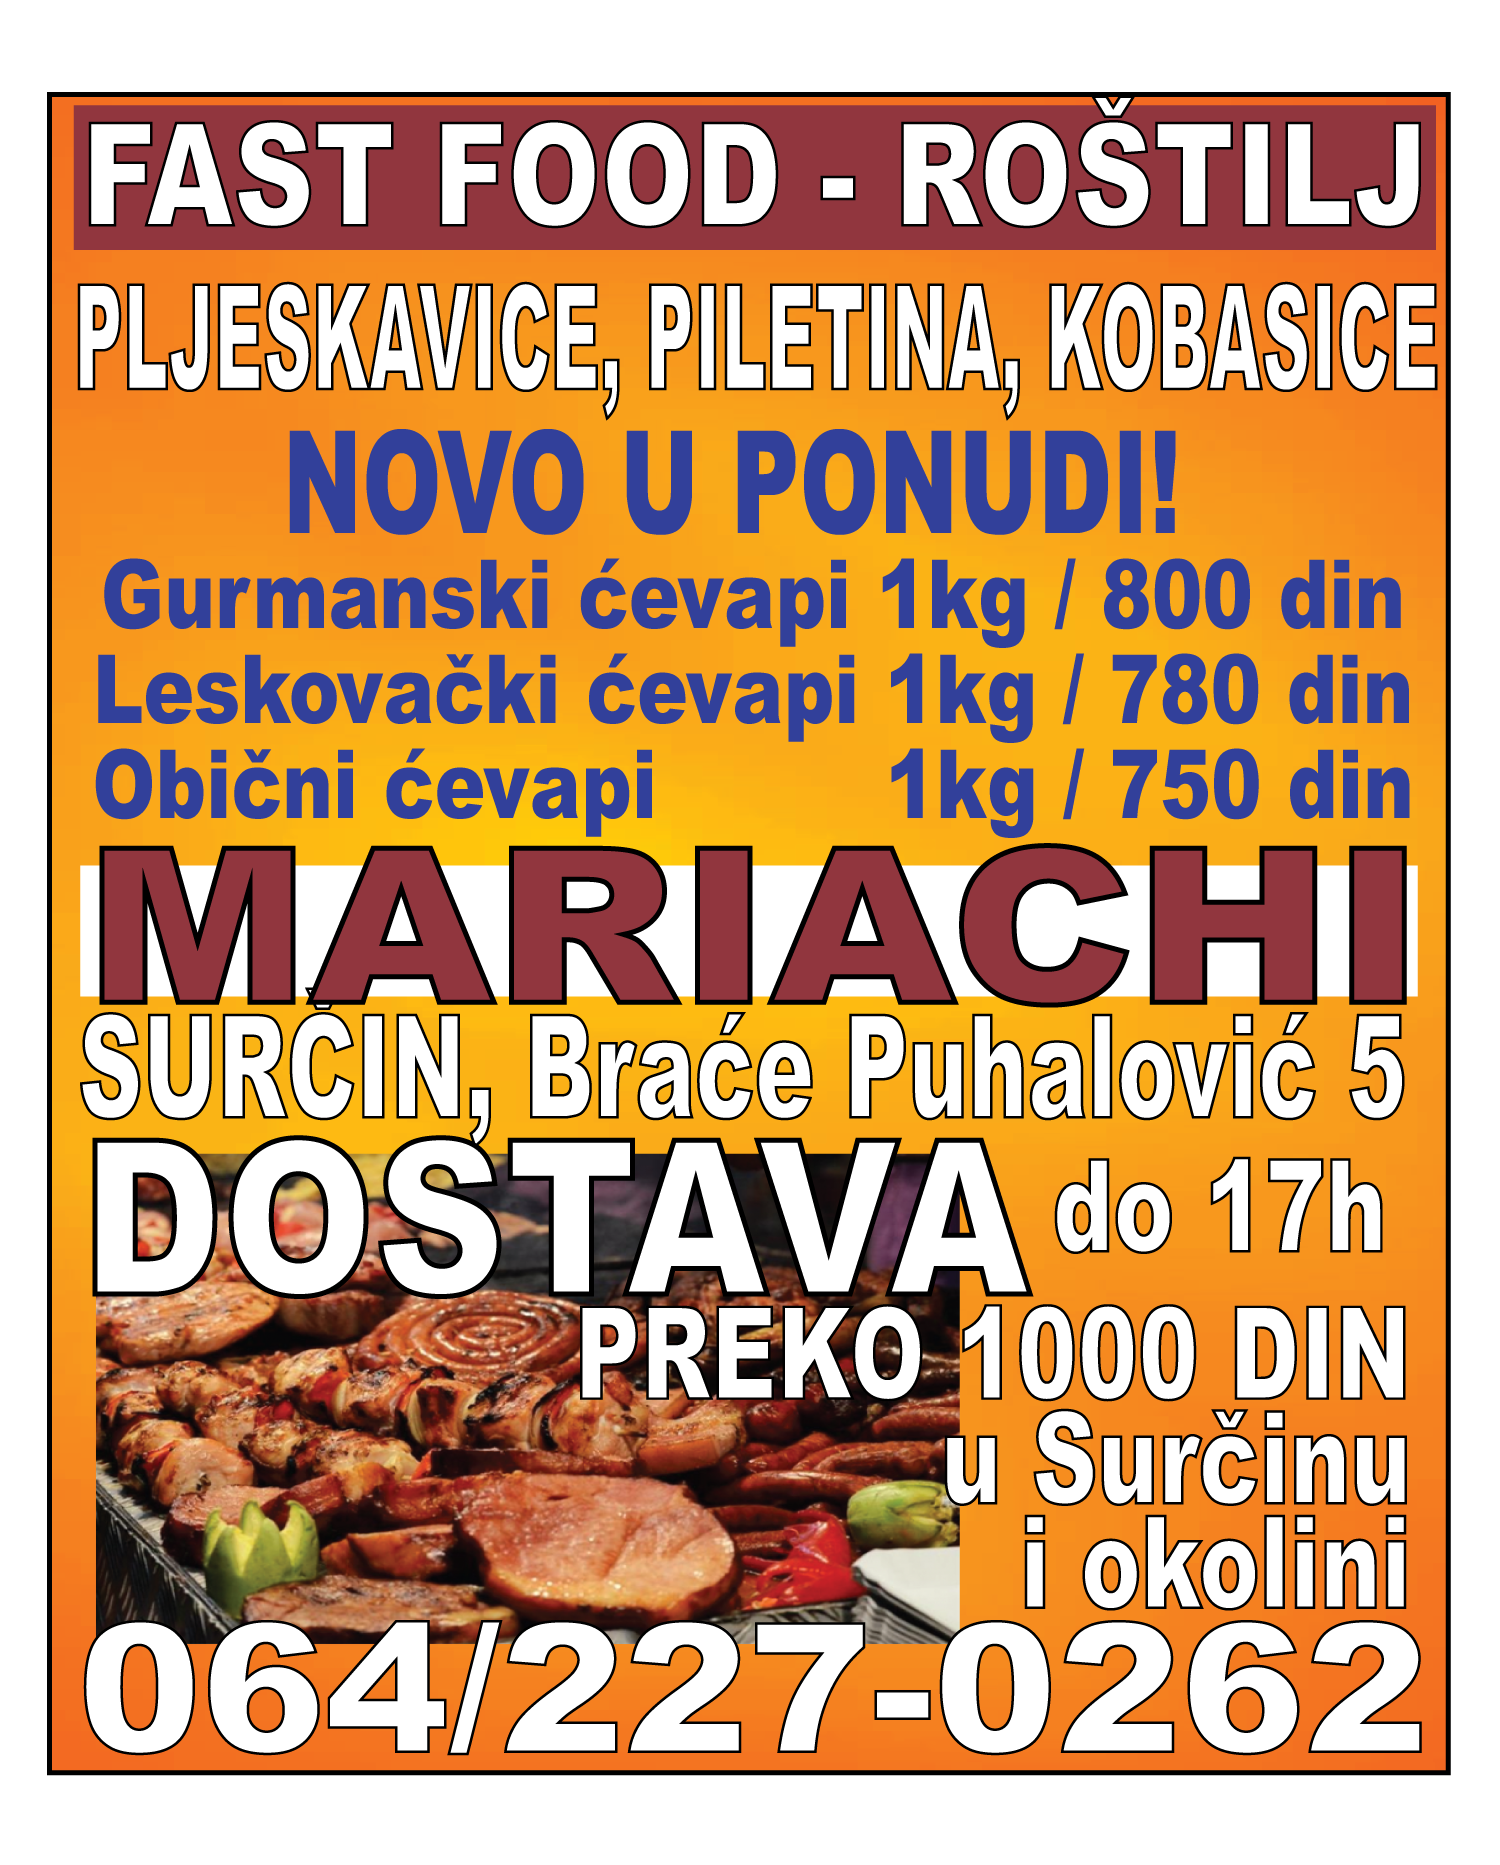 MARIACHI-SURCIN-fastfood-rostilj-cevapi-pljeskavice-kobasice-gurmanski-leskovacki-akcija-rucak-meso-kvalitet-dostava-mojabaza